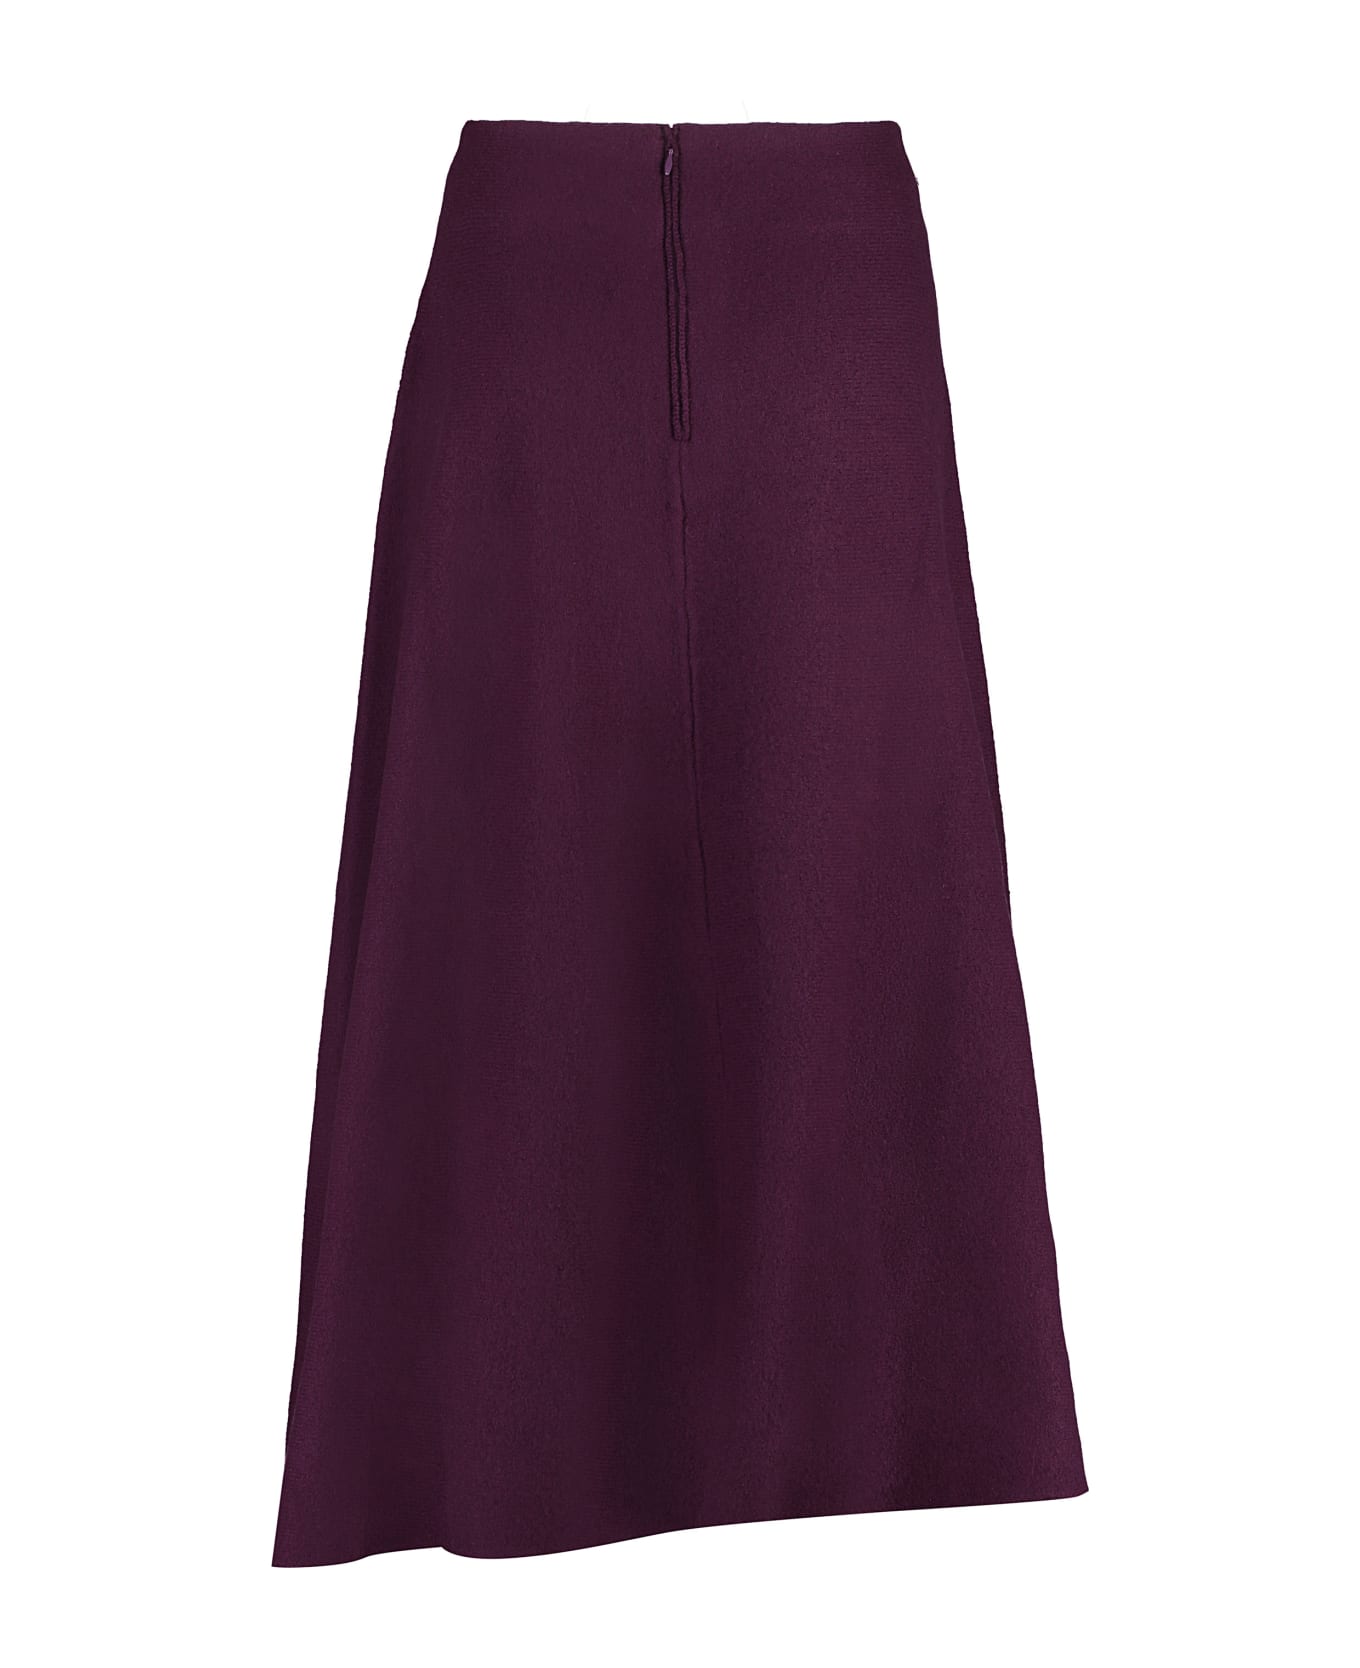 Jil Sander Wool Skirt - Red-purple or grape